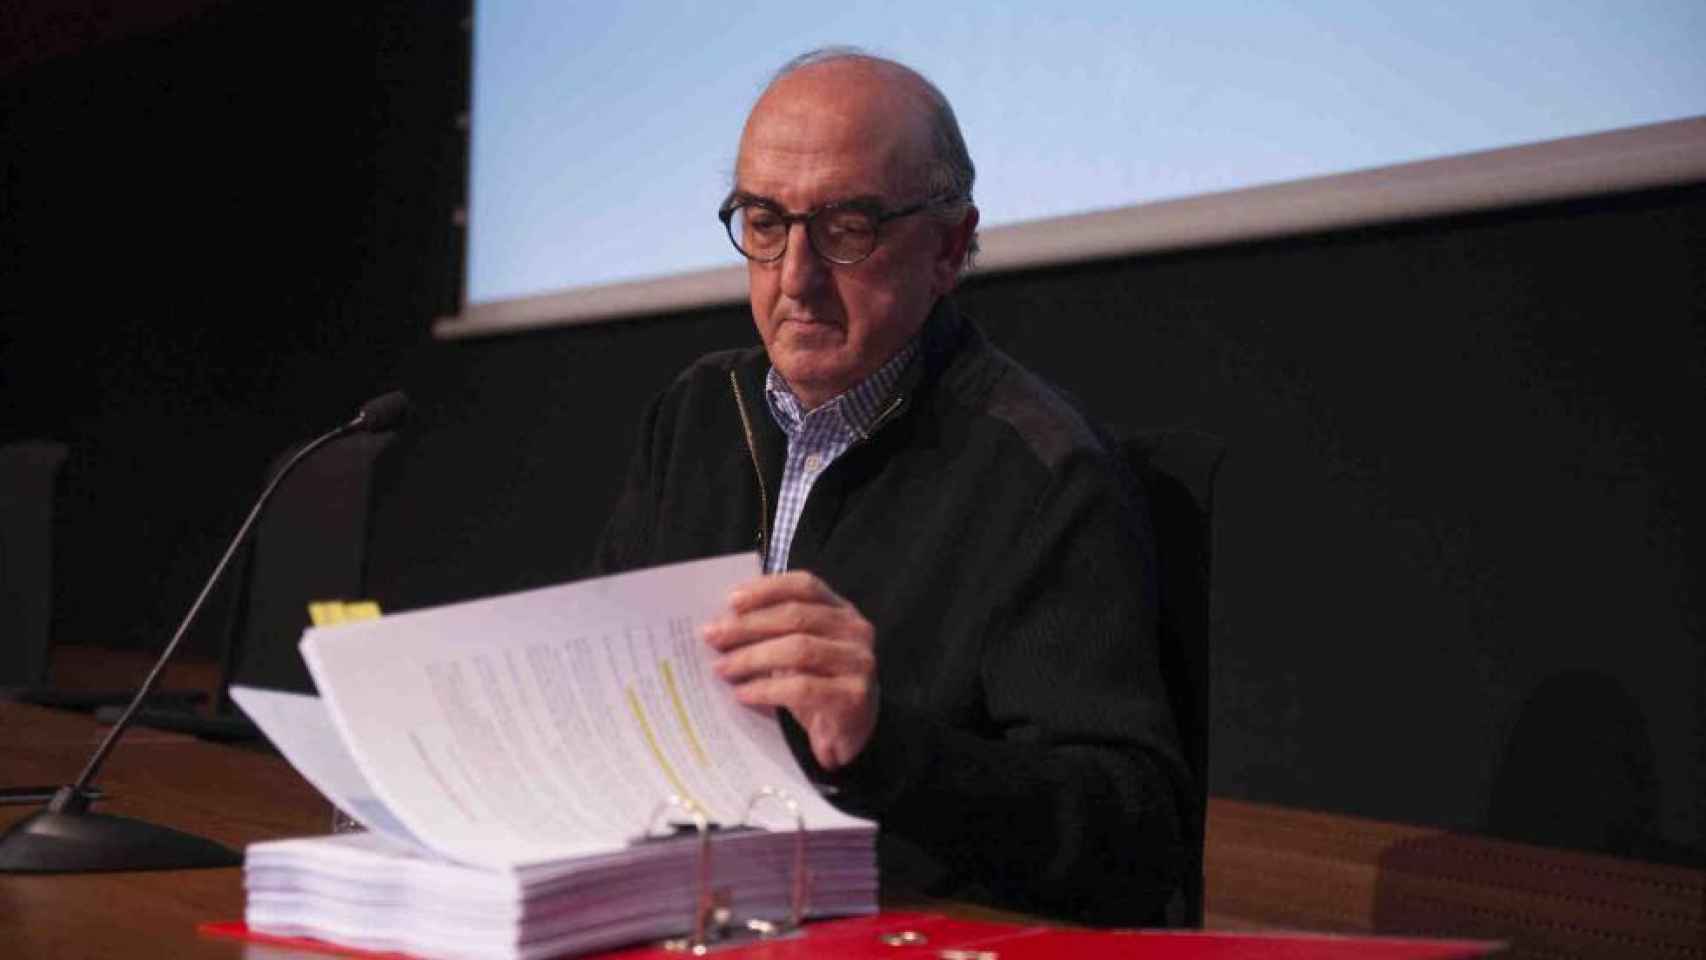 Jaume Roures en una imagen de archivo con una sentencia en las manos / EFE